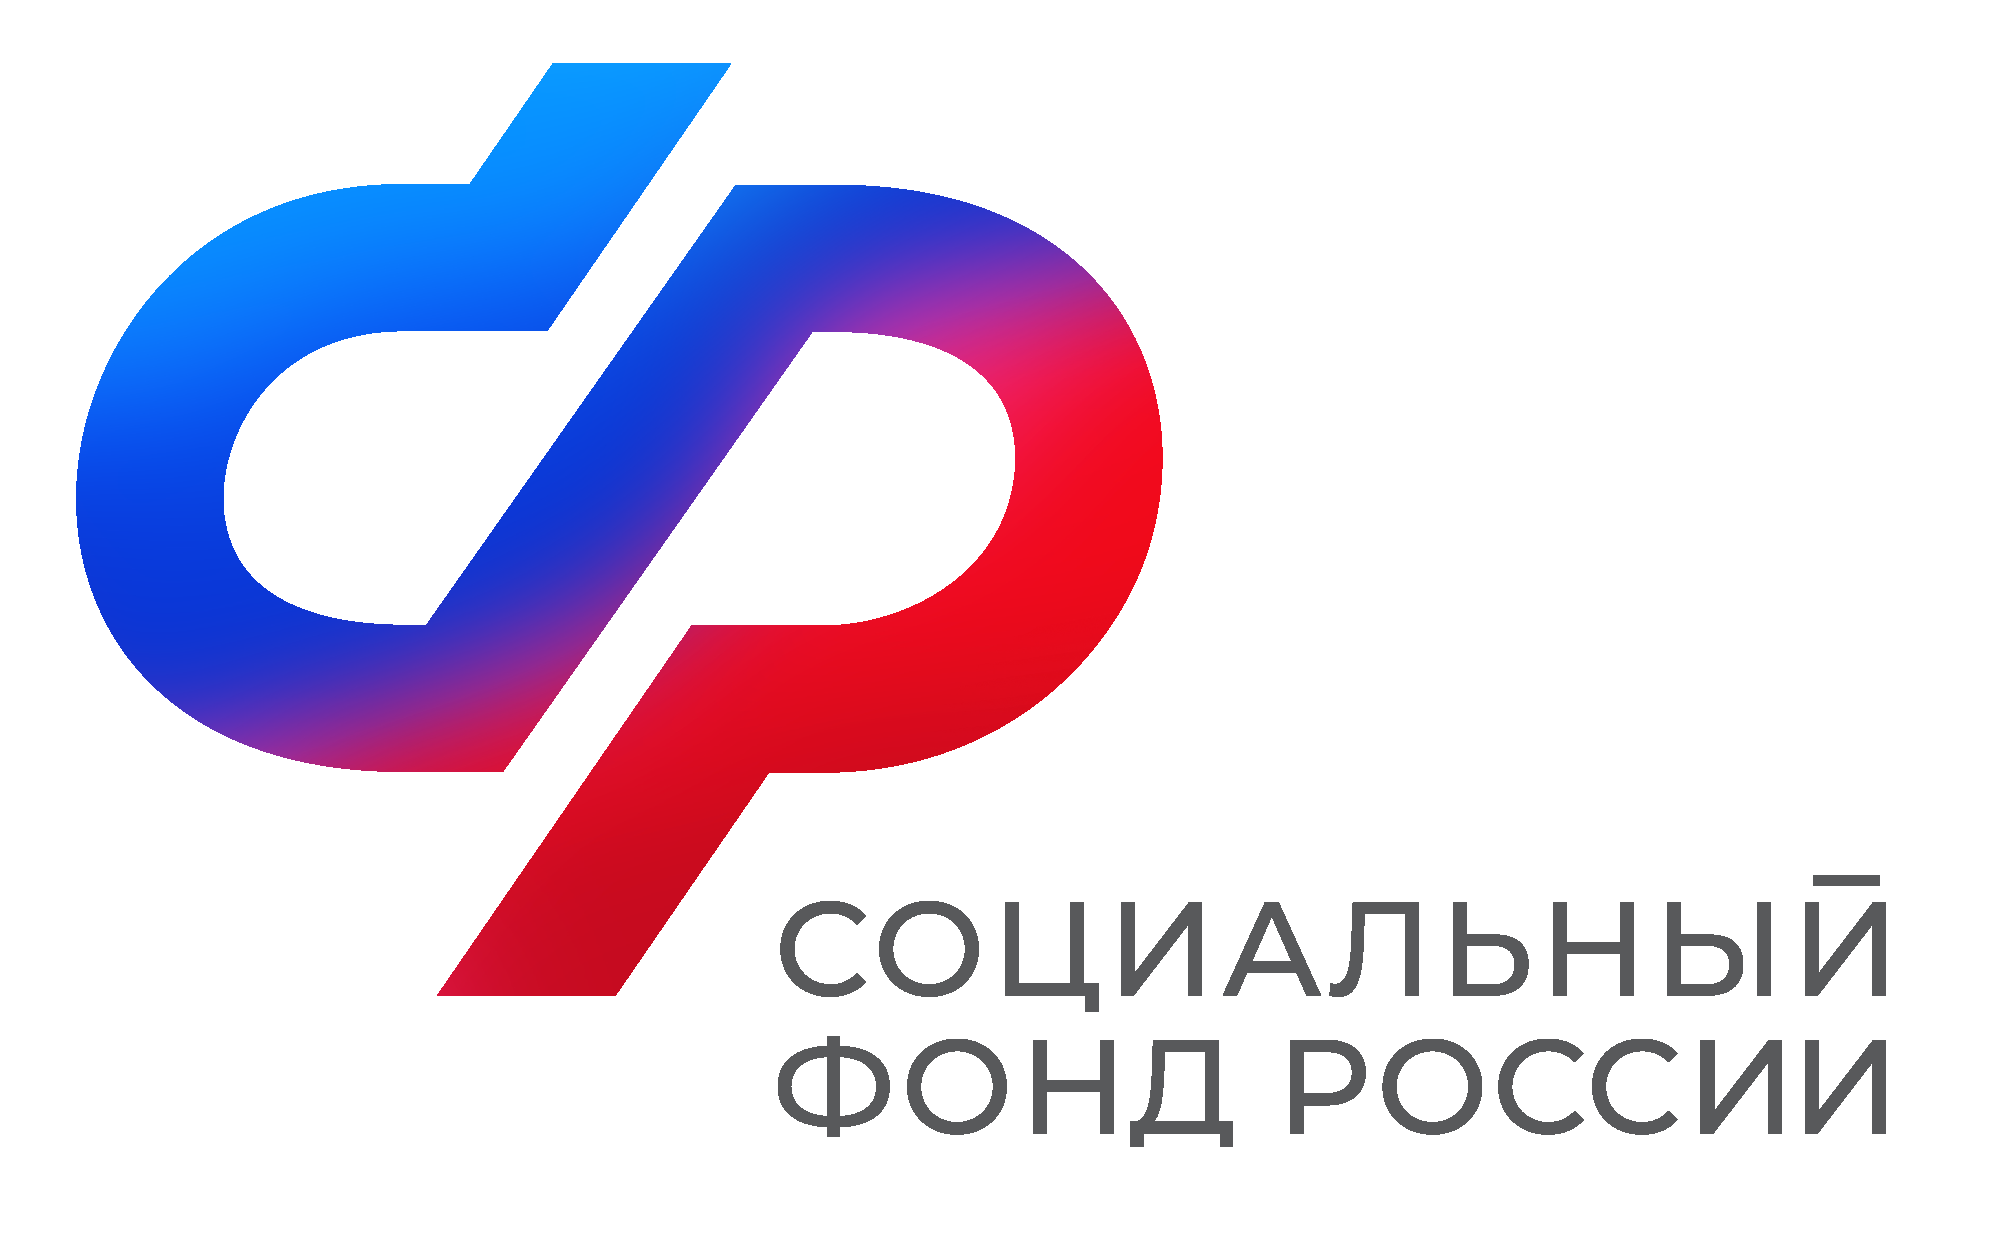 Отделение Социального фонда России по Приморскому краю проактивно оформило более 11,5 тысяч СНИЛС новорожденным.